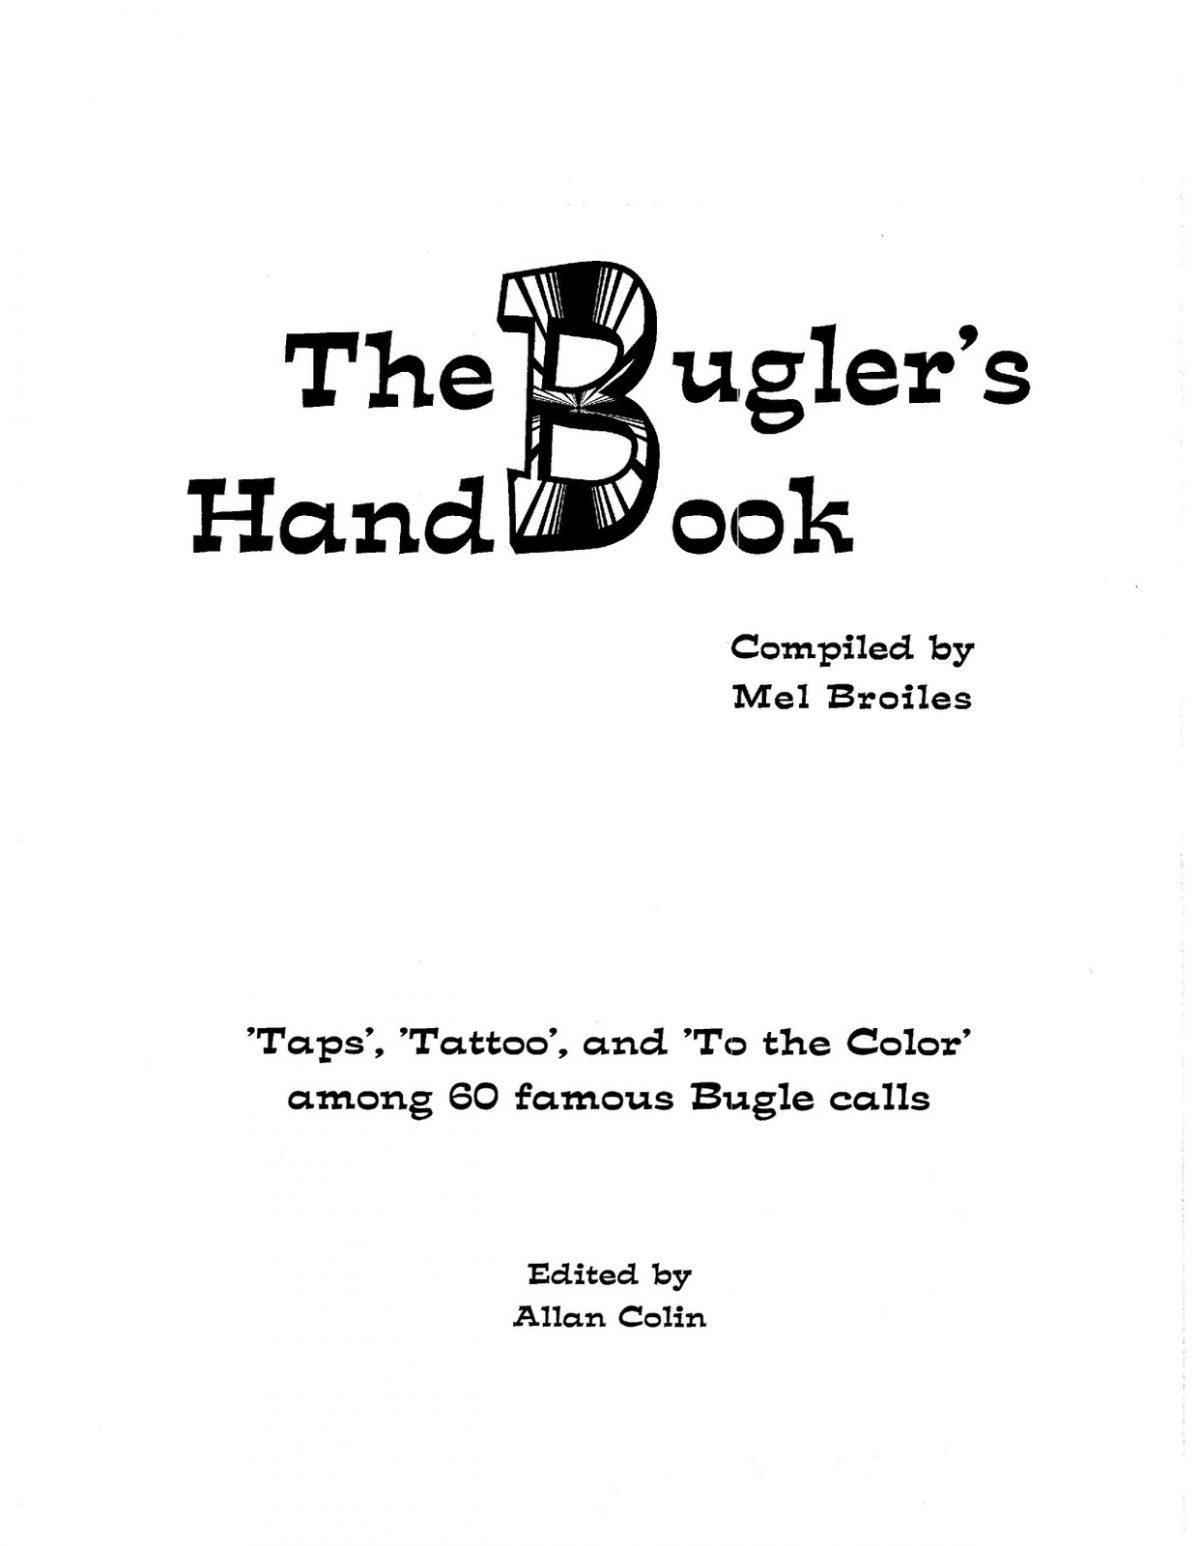 Broiles, Bugler's Handbook